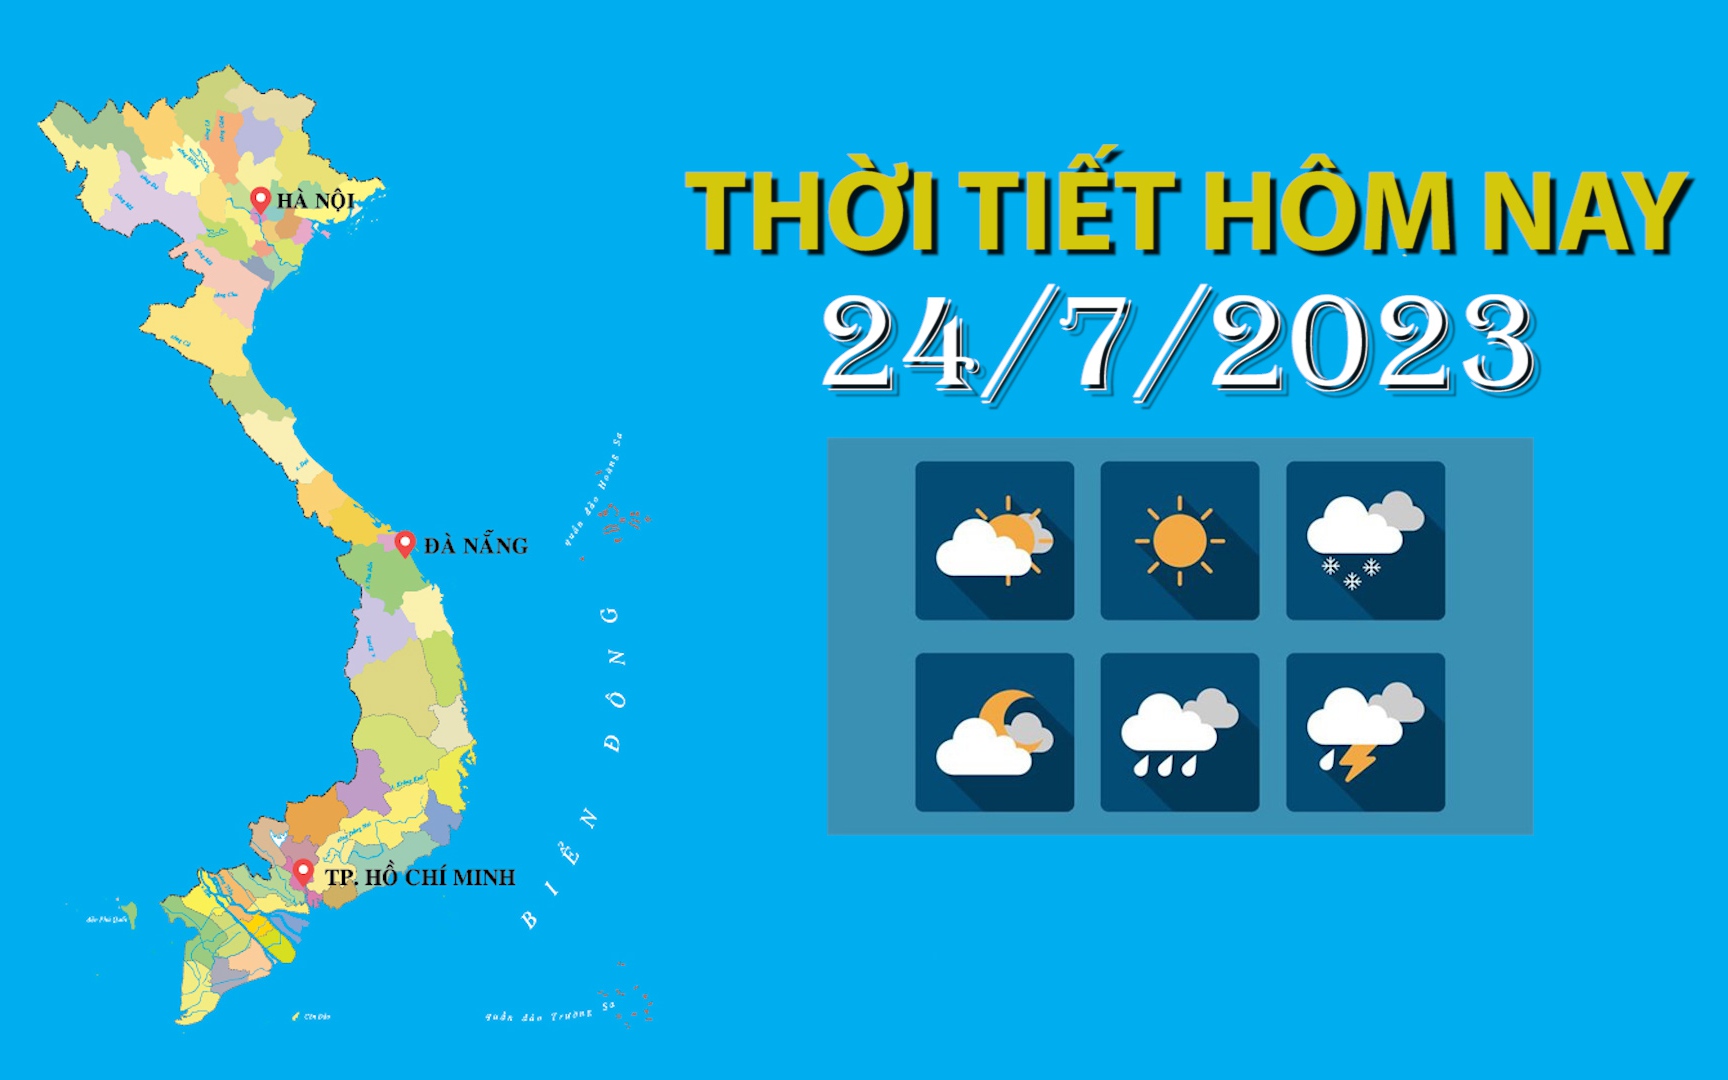 Thời tiết hôm nay 24/7/2023: Bắc Bộ nắng nóng; Trung Bộ, Tây Nguyên, Nam Bộ có mưa rào